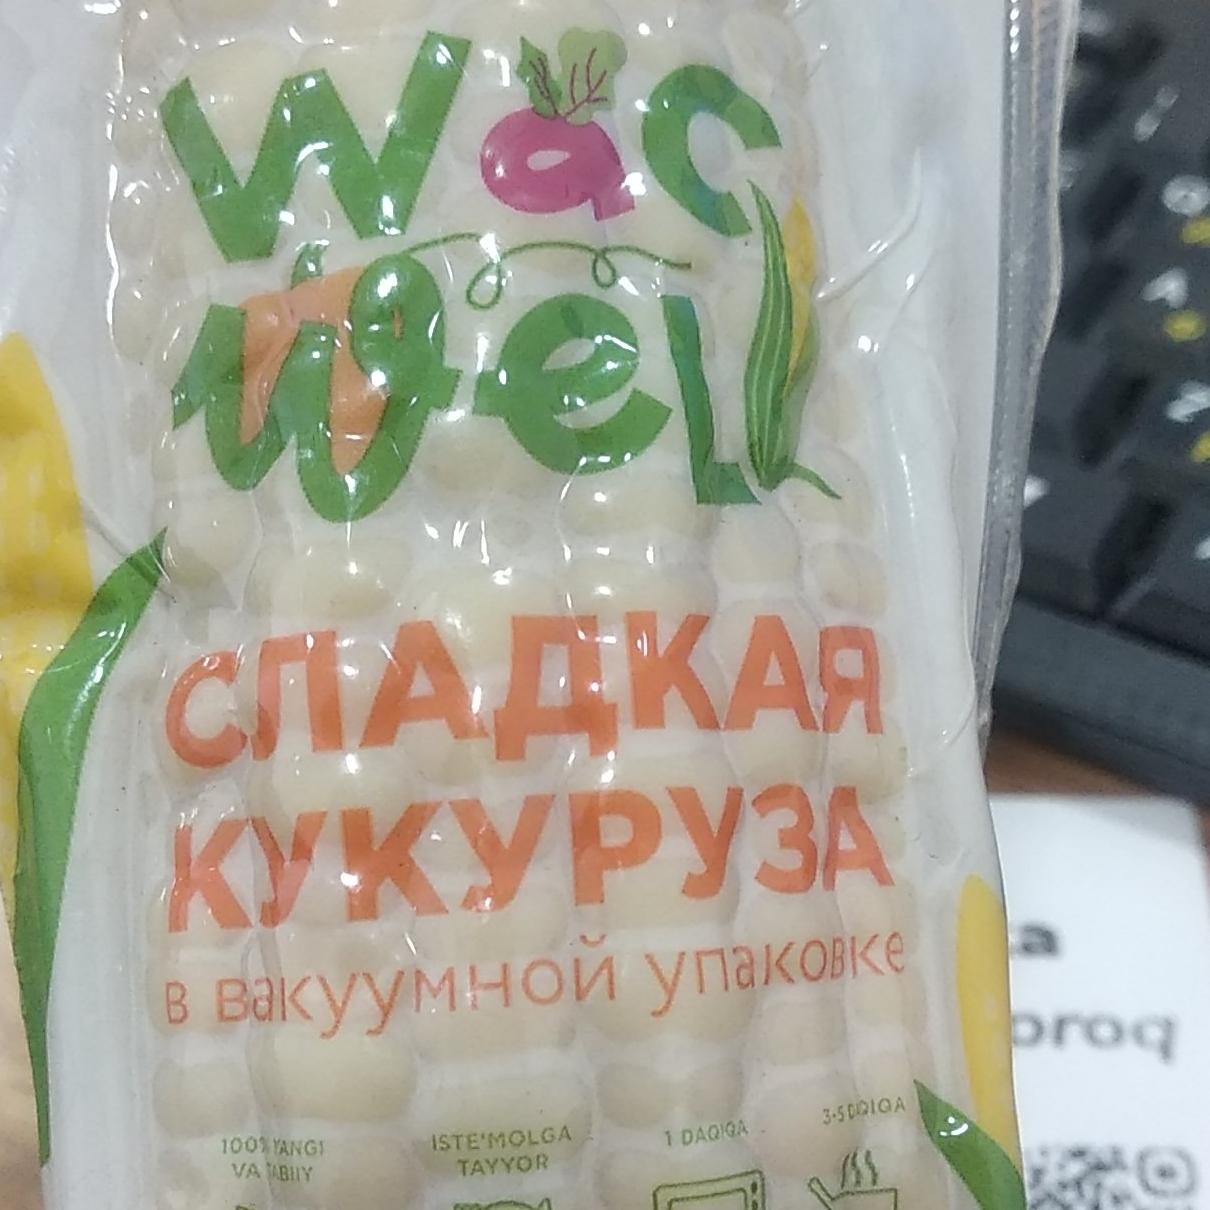 Фото - сладкая кукуруза в вакуумной упаковке Wac wel